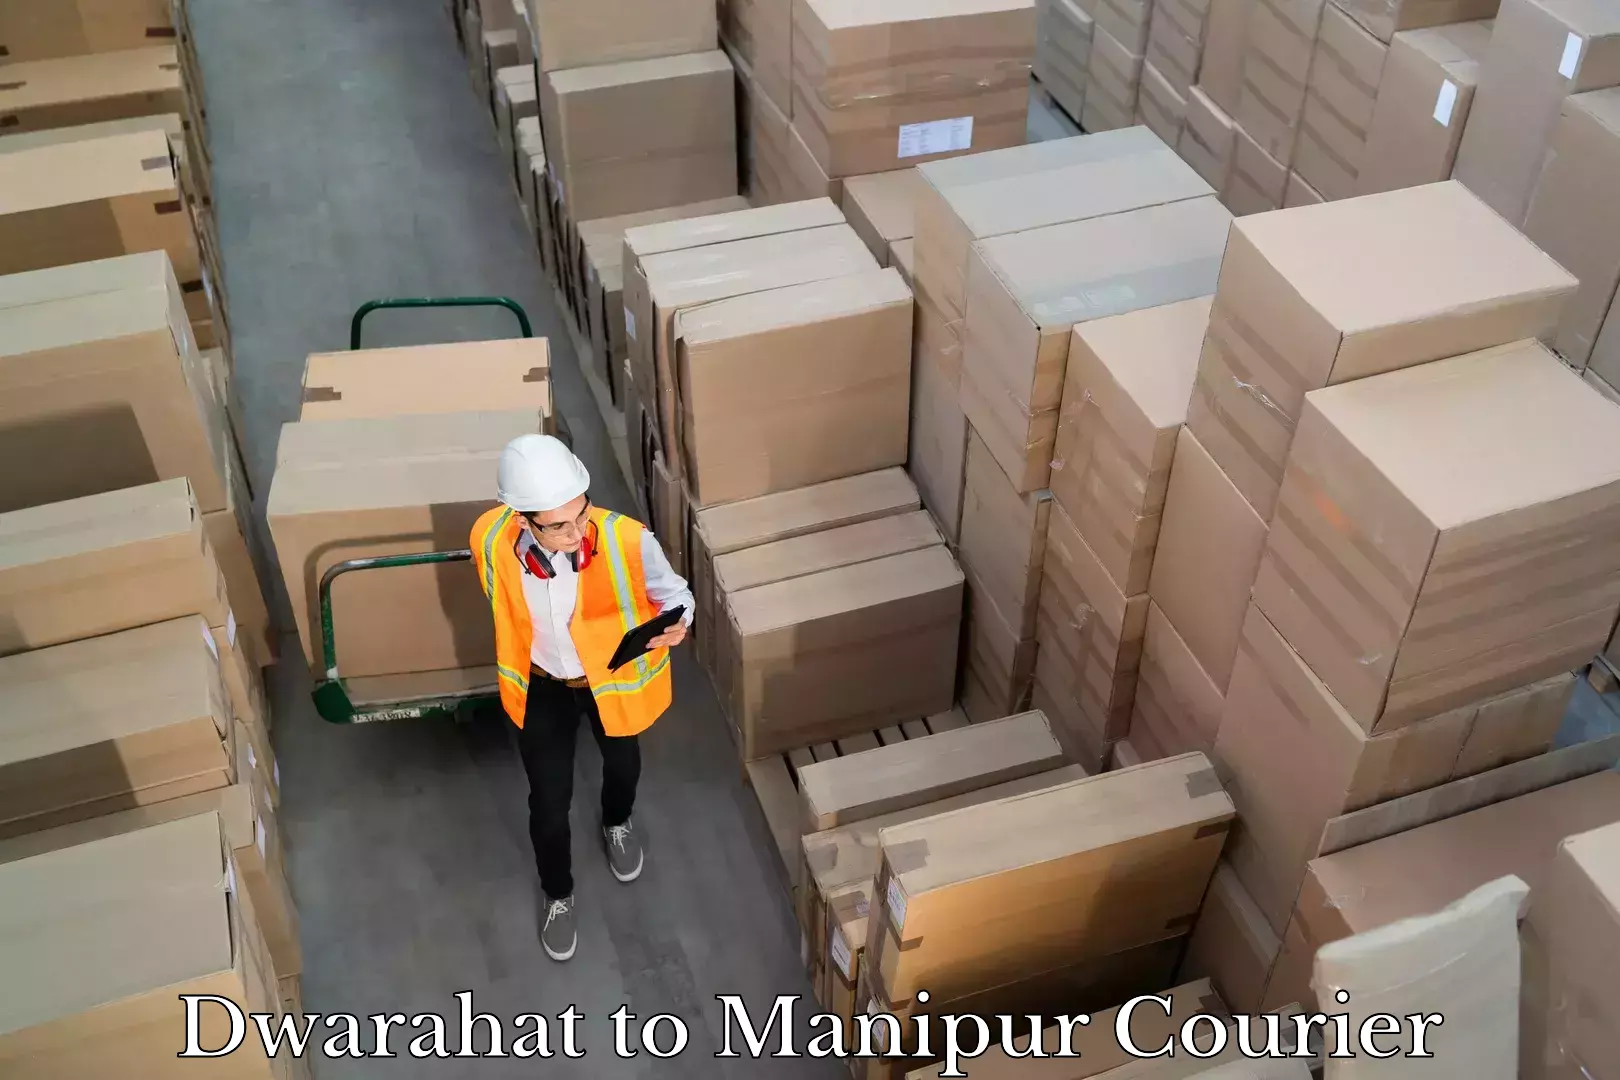 Courier service comparison Dwarahat to Manipur